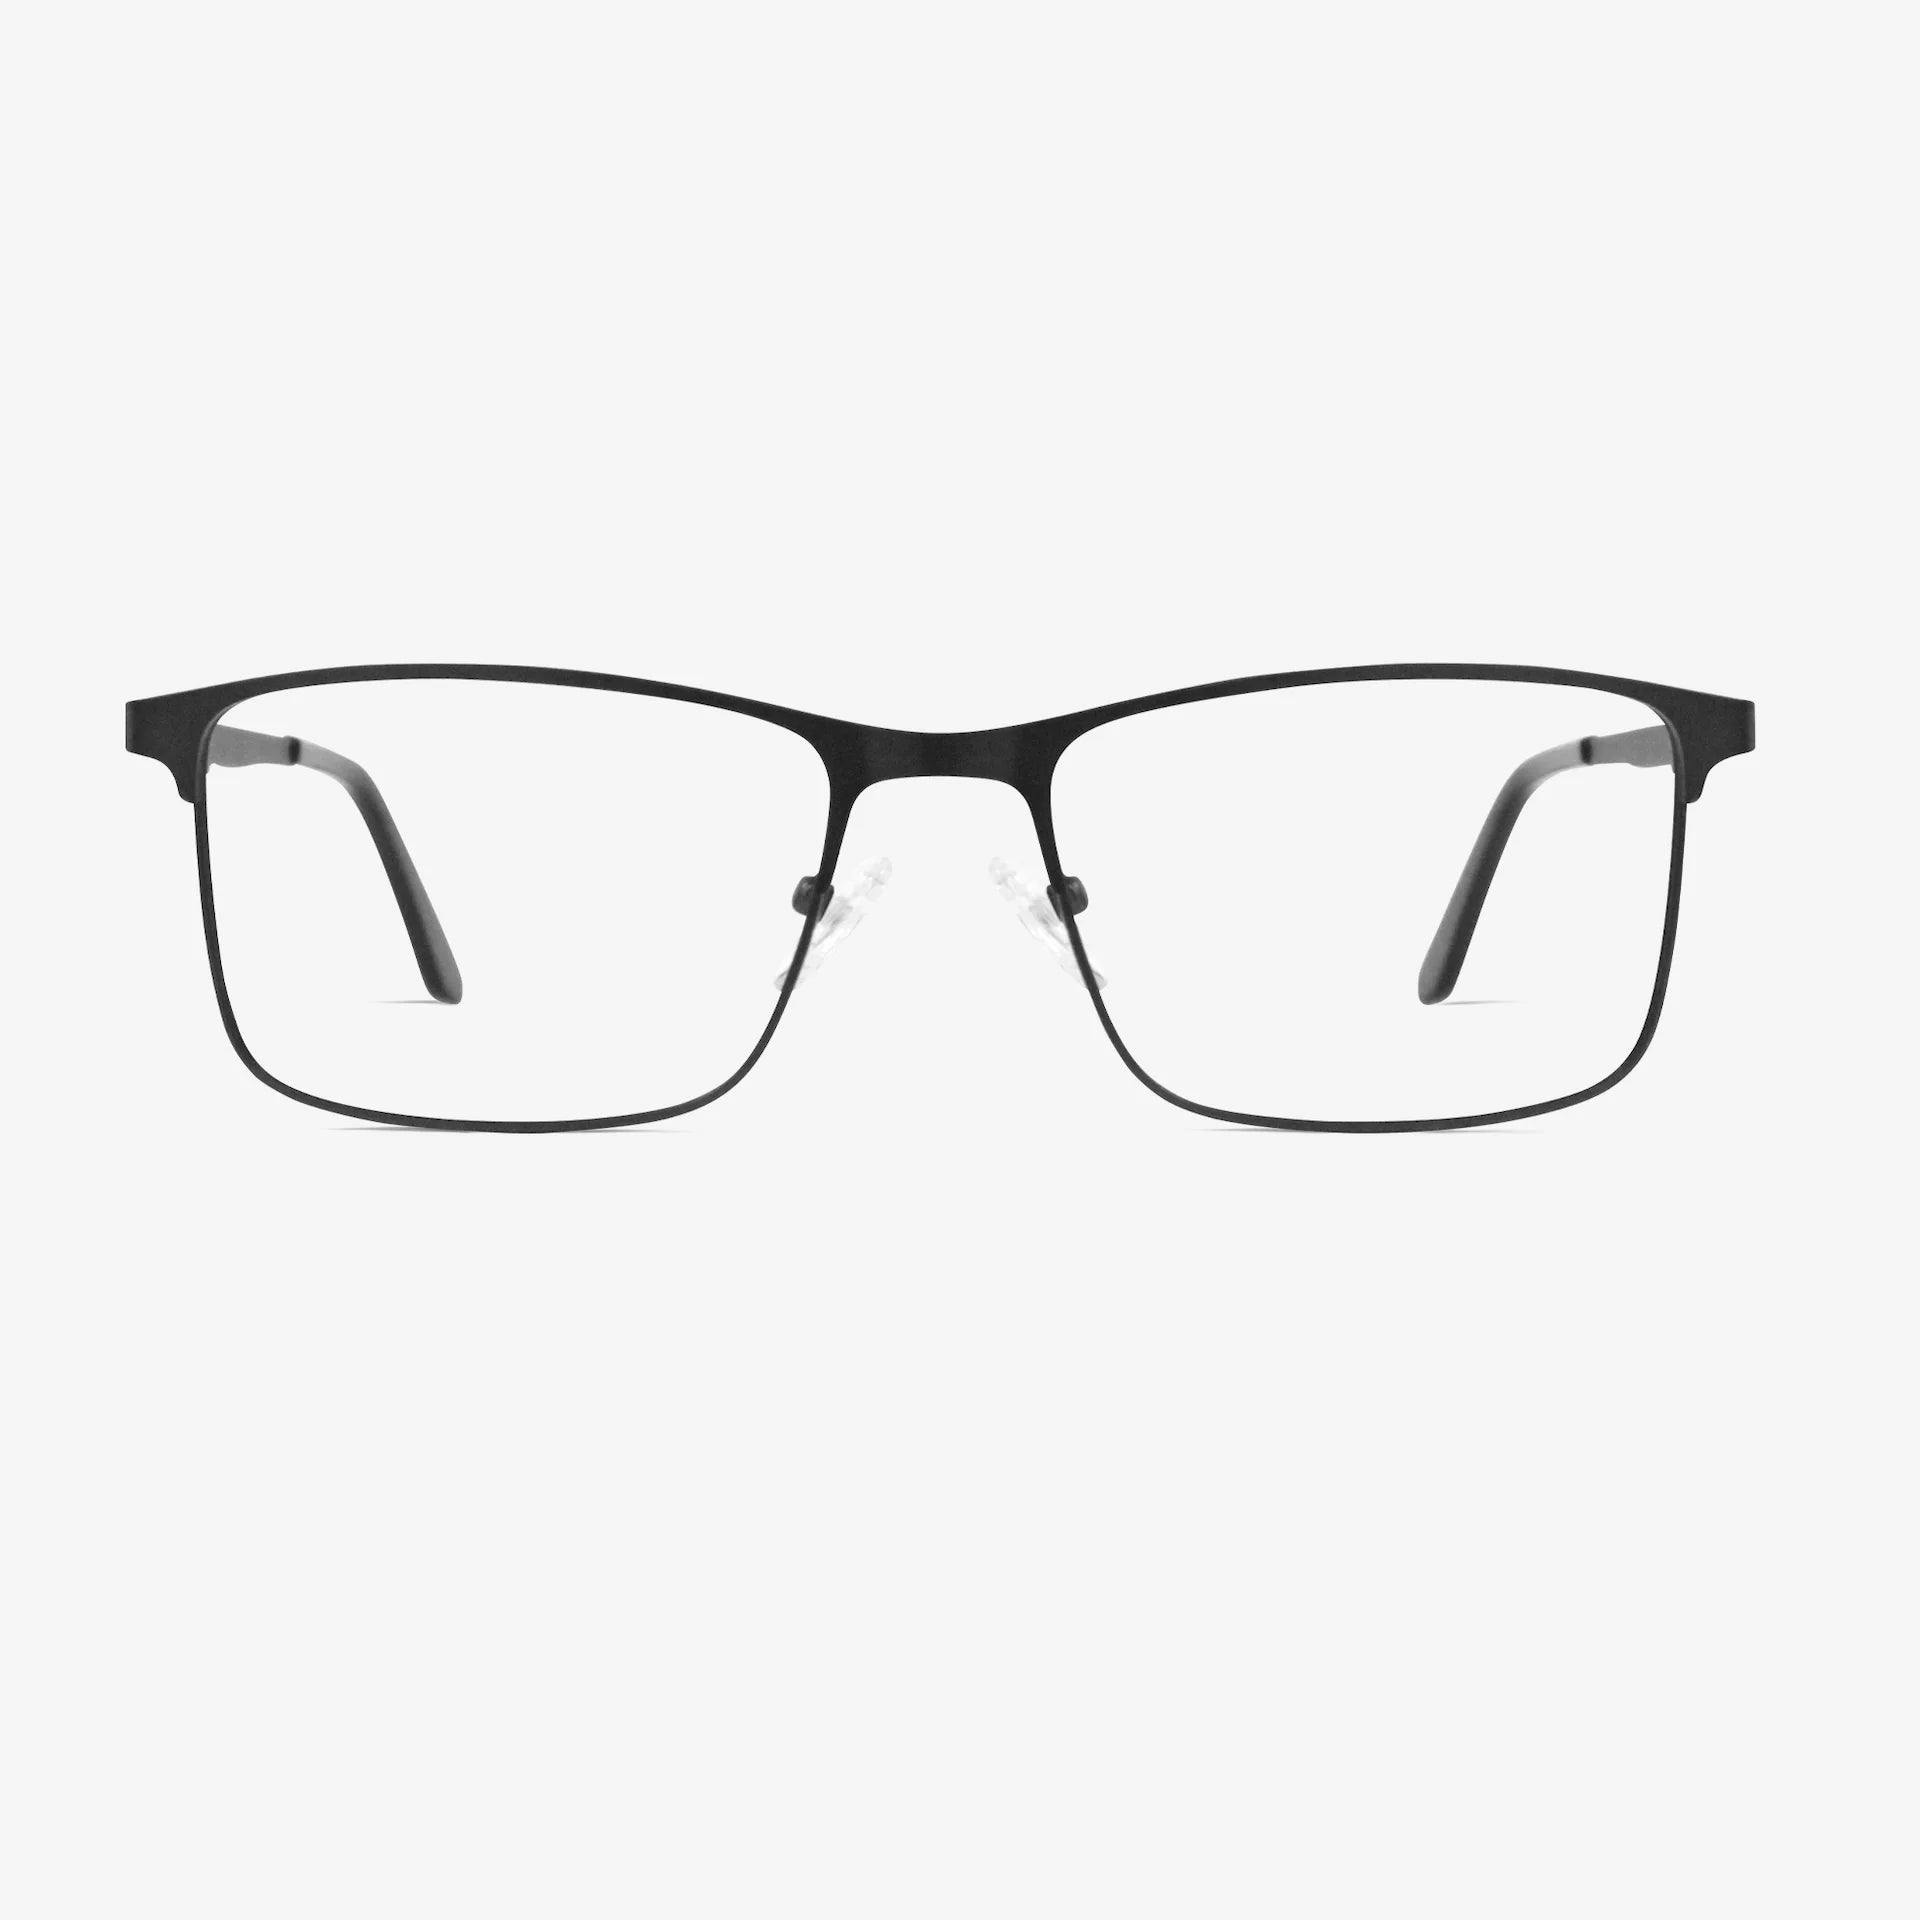 Huxley glasses | Superior Black 